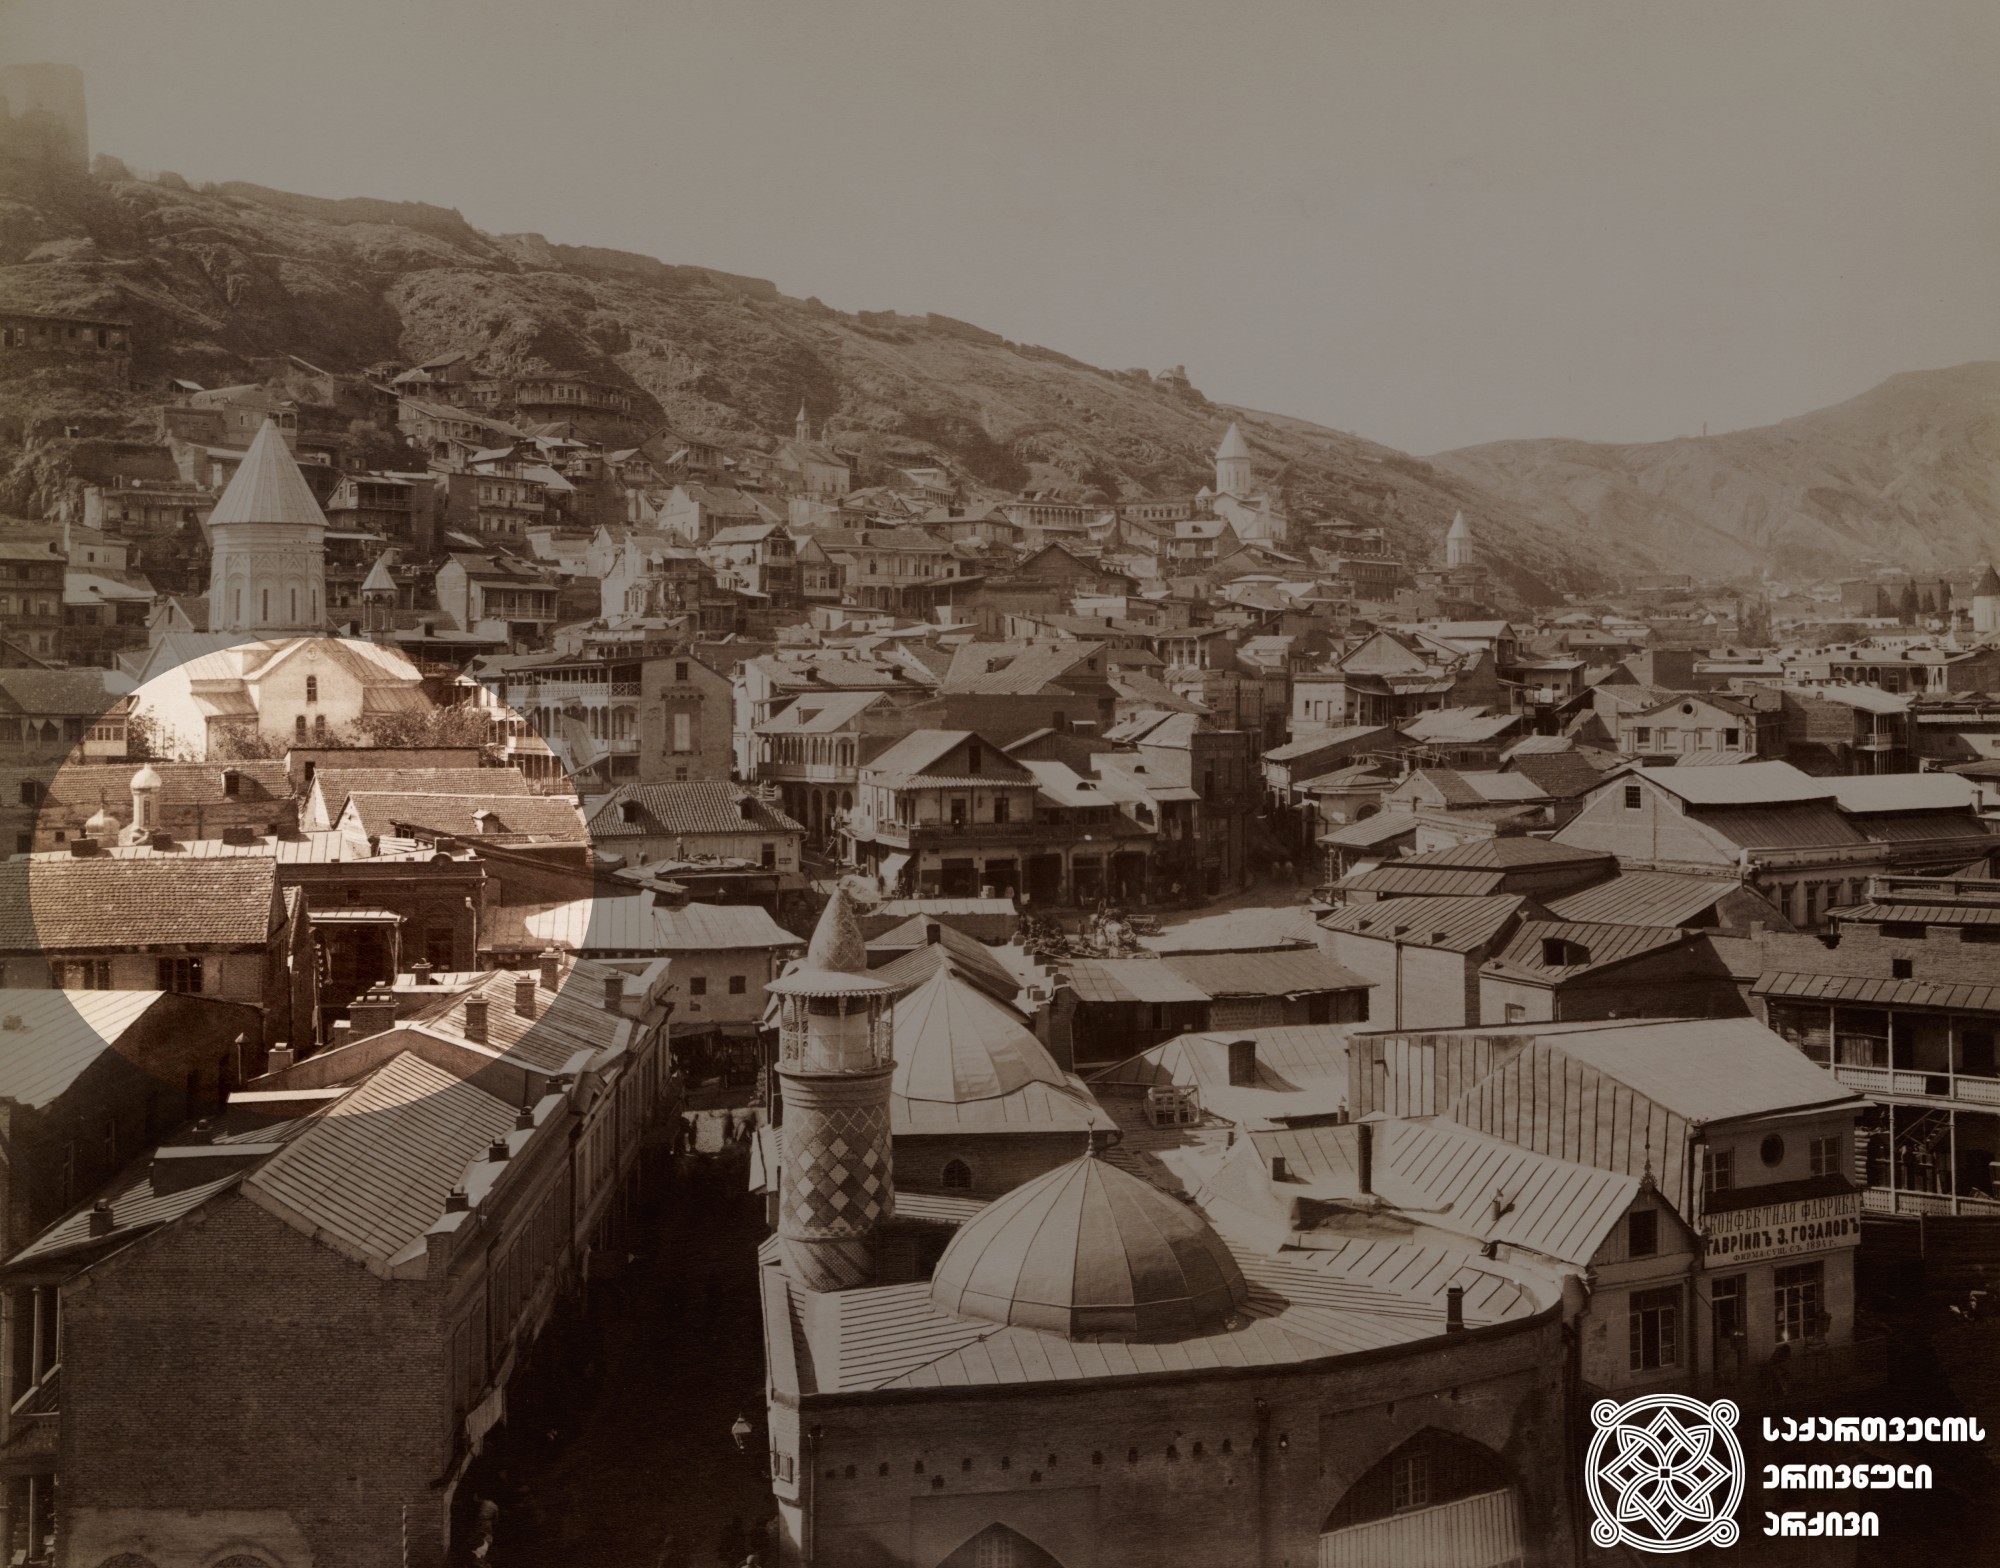 ძველი თბილისი. <br>
ფოტო: დიმიტრი ერმაკოვის კოლექციიდან. <br>
[1890-1900]. <br>
შენიშვნა: ფოტოზე მოჩანს წმინდა ეკატერინეს ბერძნული ტაძრის გუმბათი. <br>
Old Tbilisi. <br>
Photo from Dmitry Ermakov’s collection. <br>
[1890-1900]. <br>
Note: The photo shows the dome of the Greek temple of St. Catherine. <br>